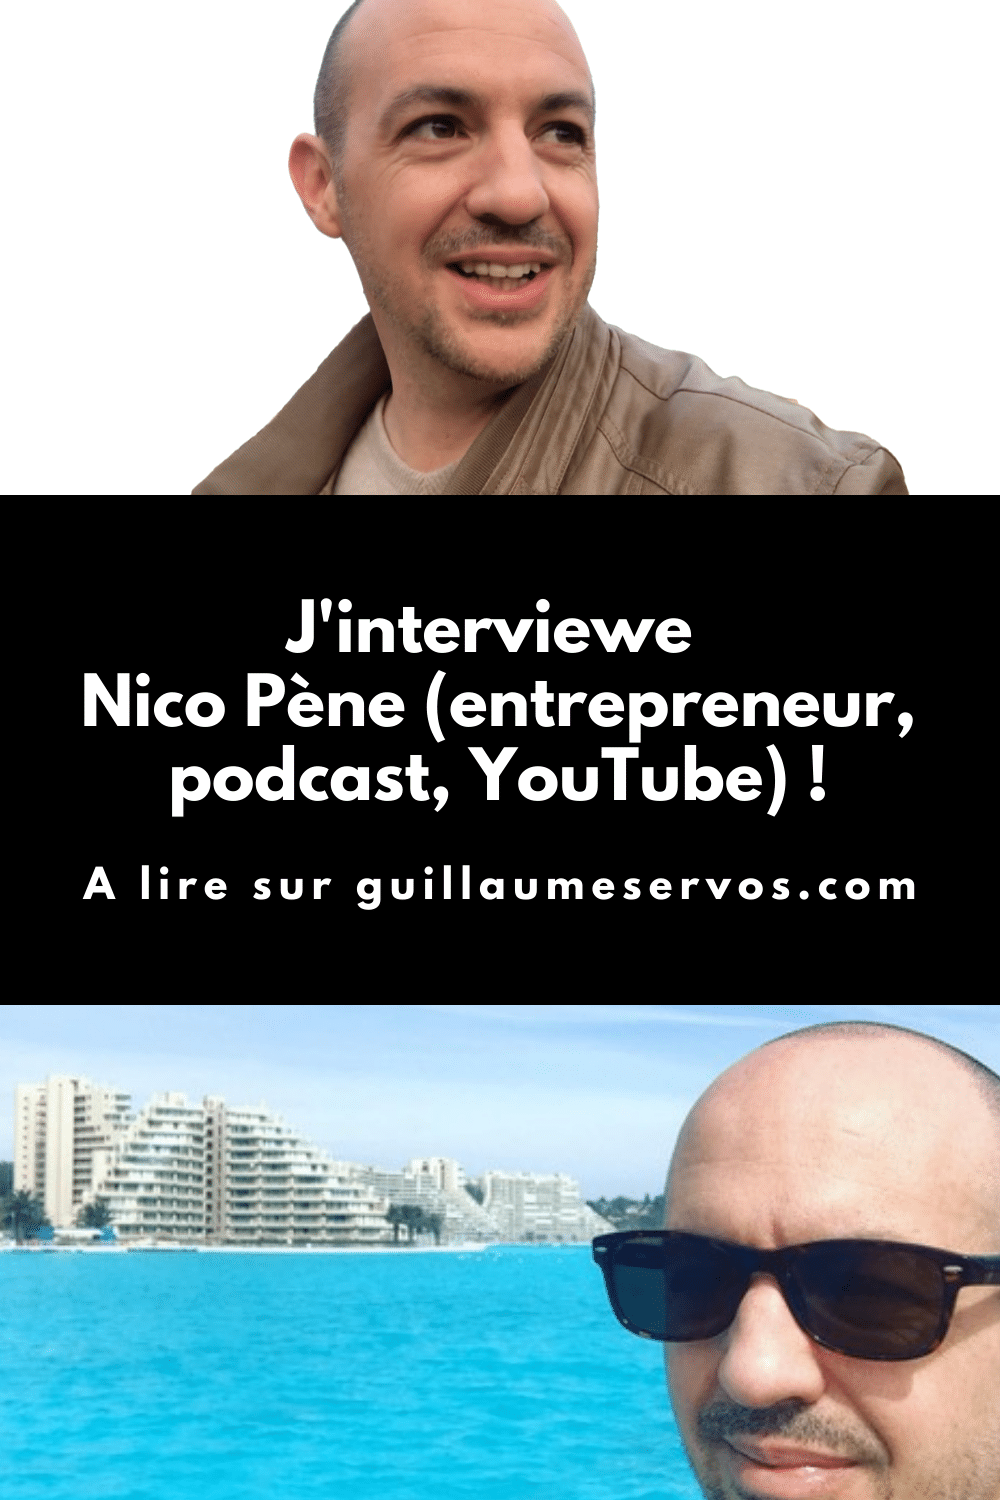 Découvre mon interview avec Nicolas Pène, entrepreneur. Au menu : son rapport à l'entrepreneuriat, au podcasting, aux réseaux sociaux et au voyage.